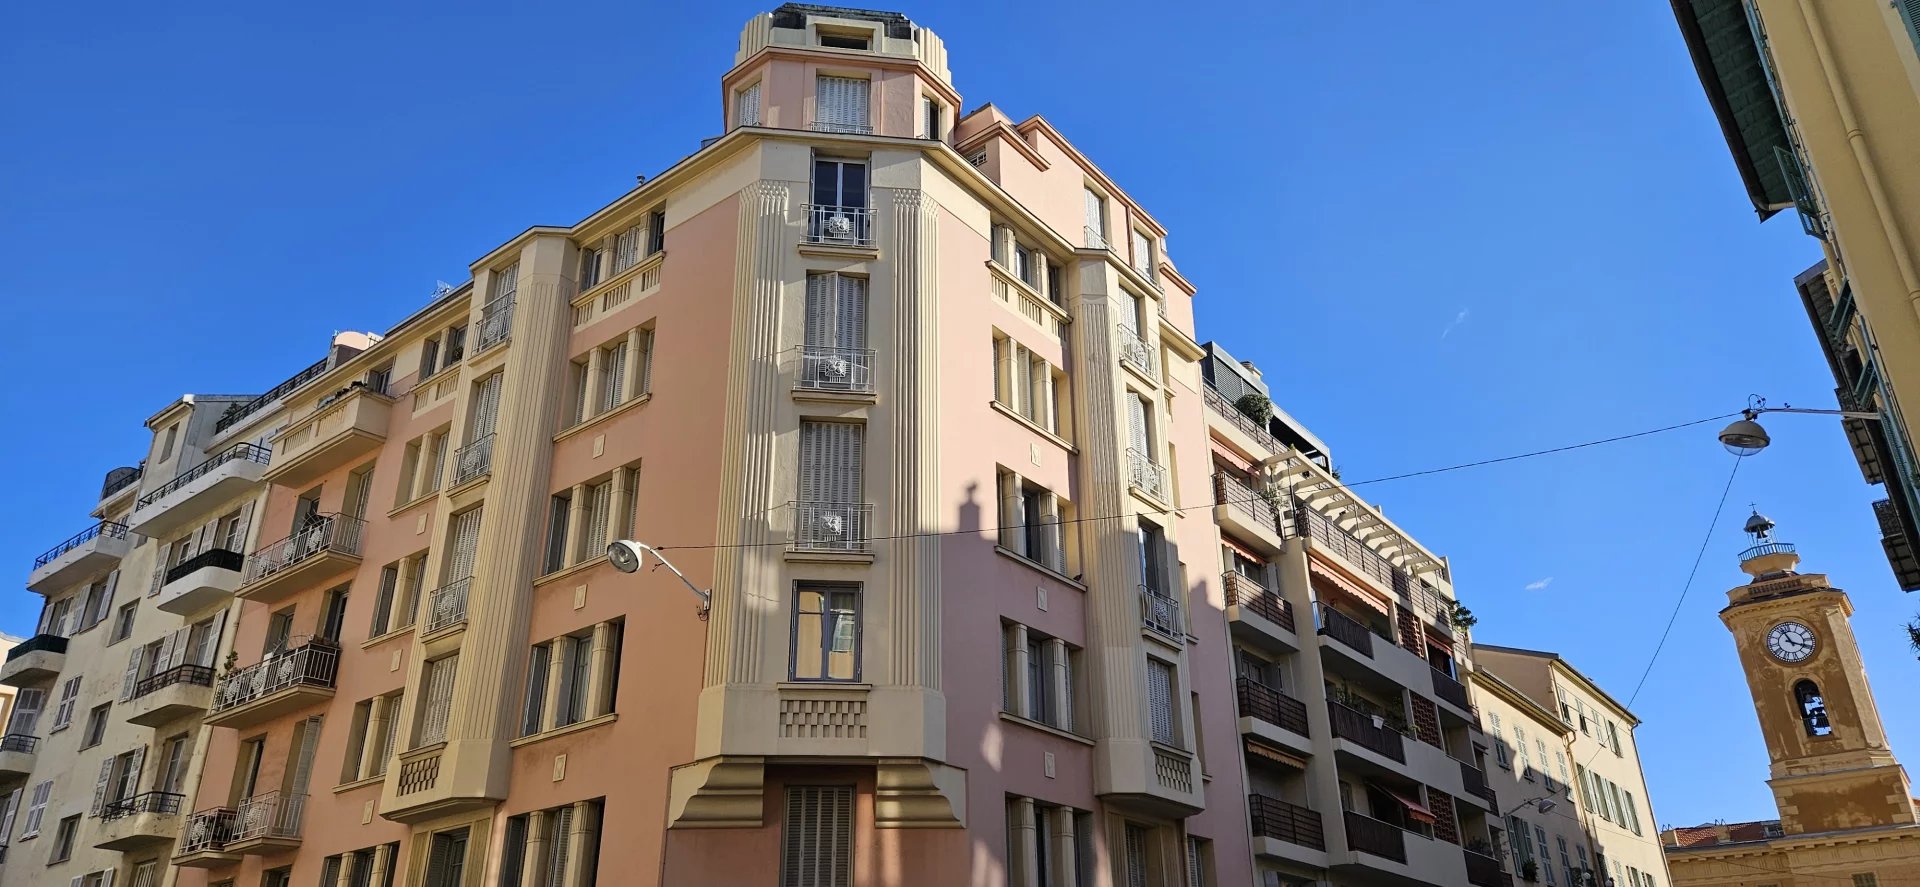 Vente Nice appartement 2 pièces 37.34 m² situé quartier Port